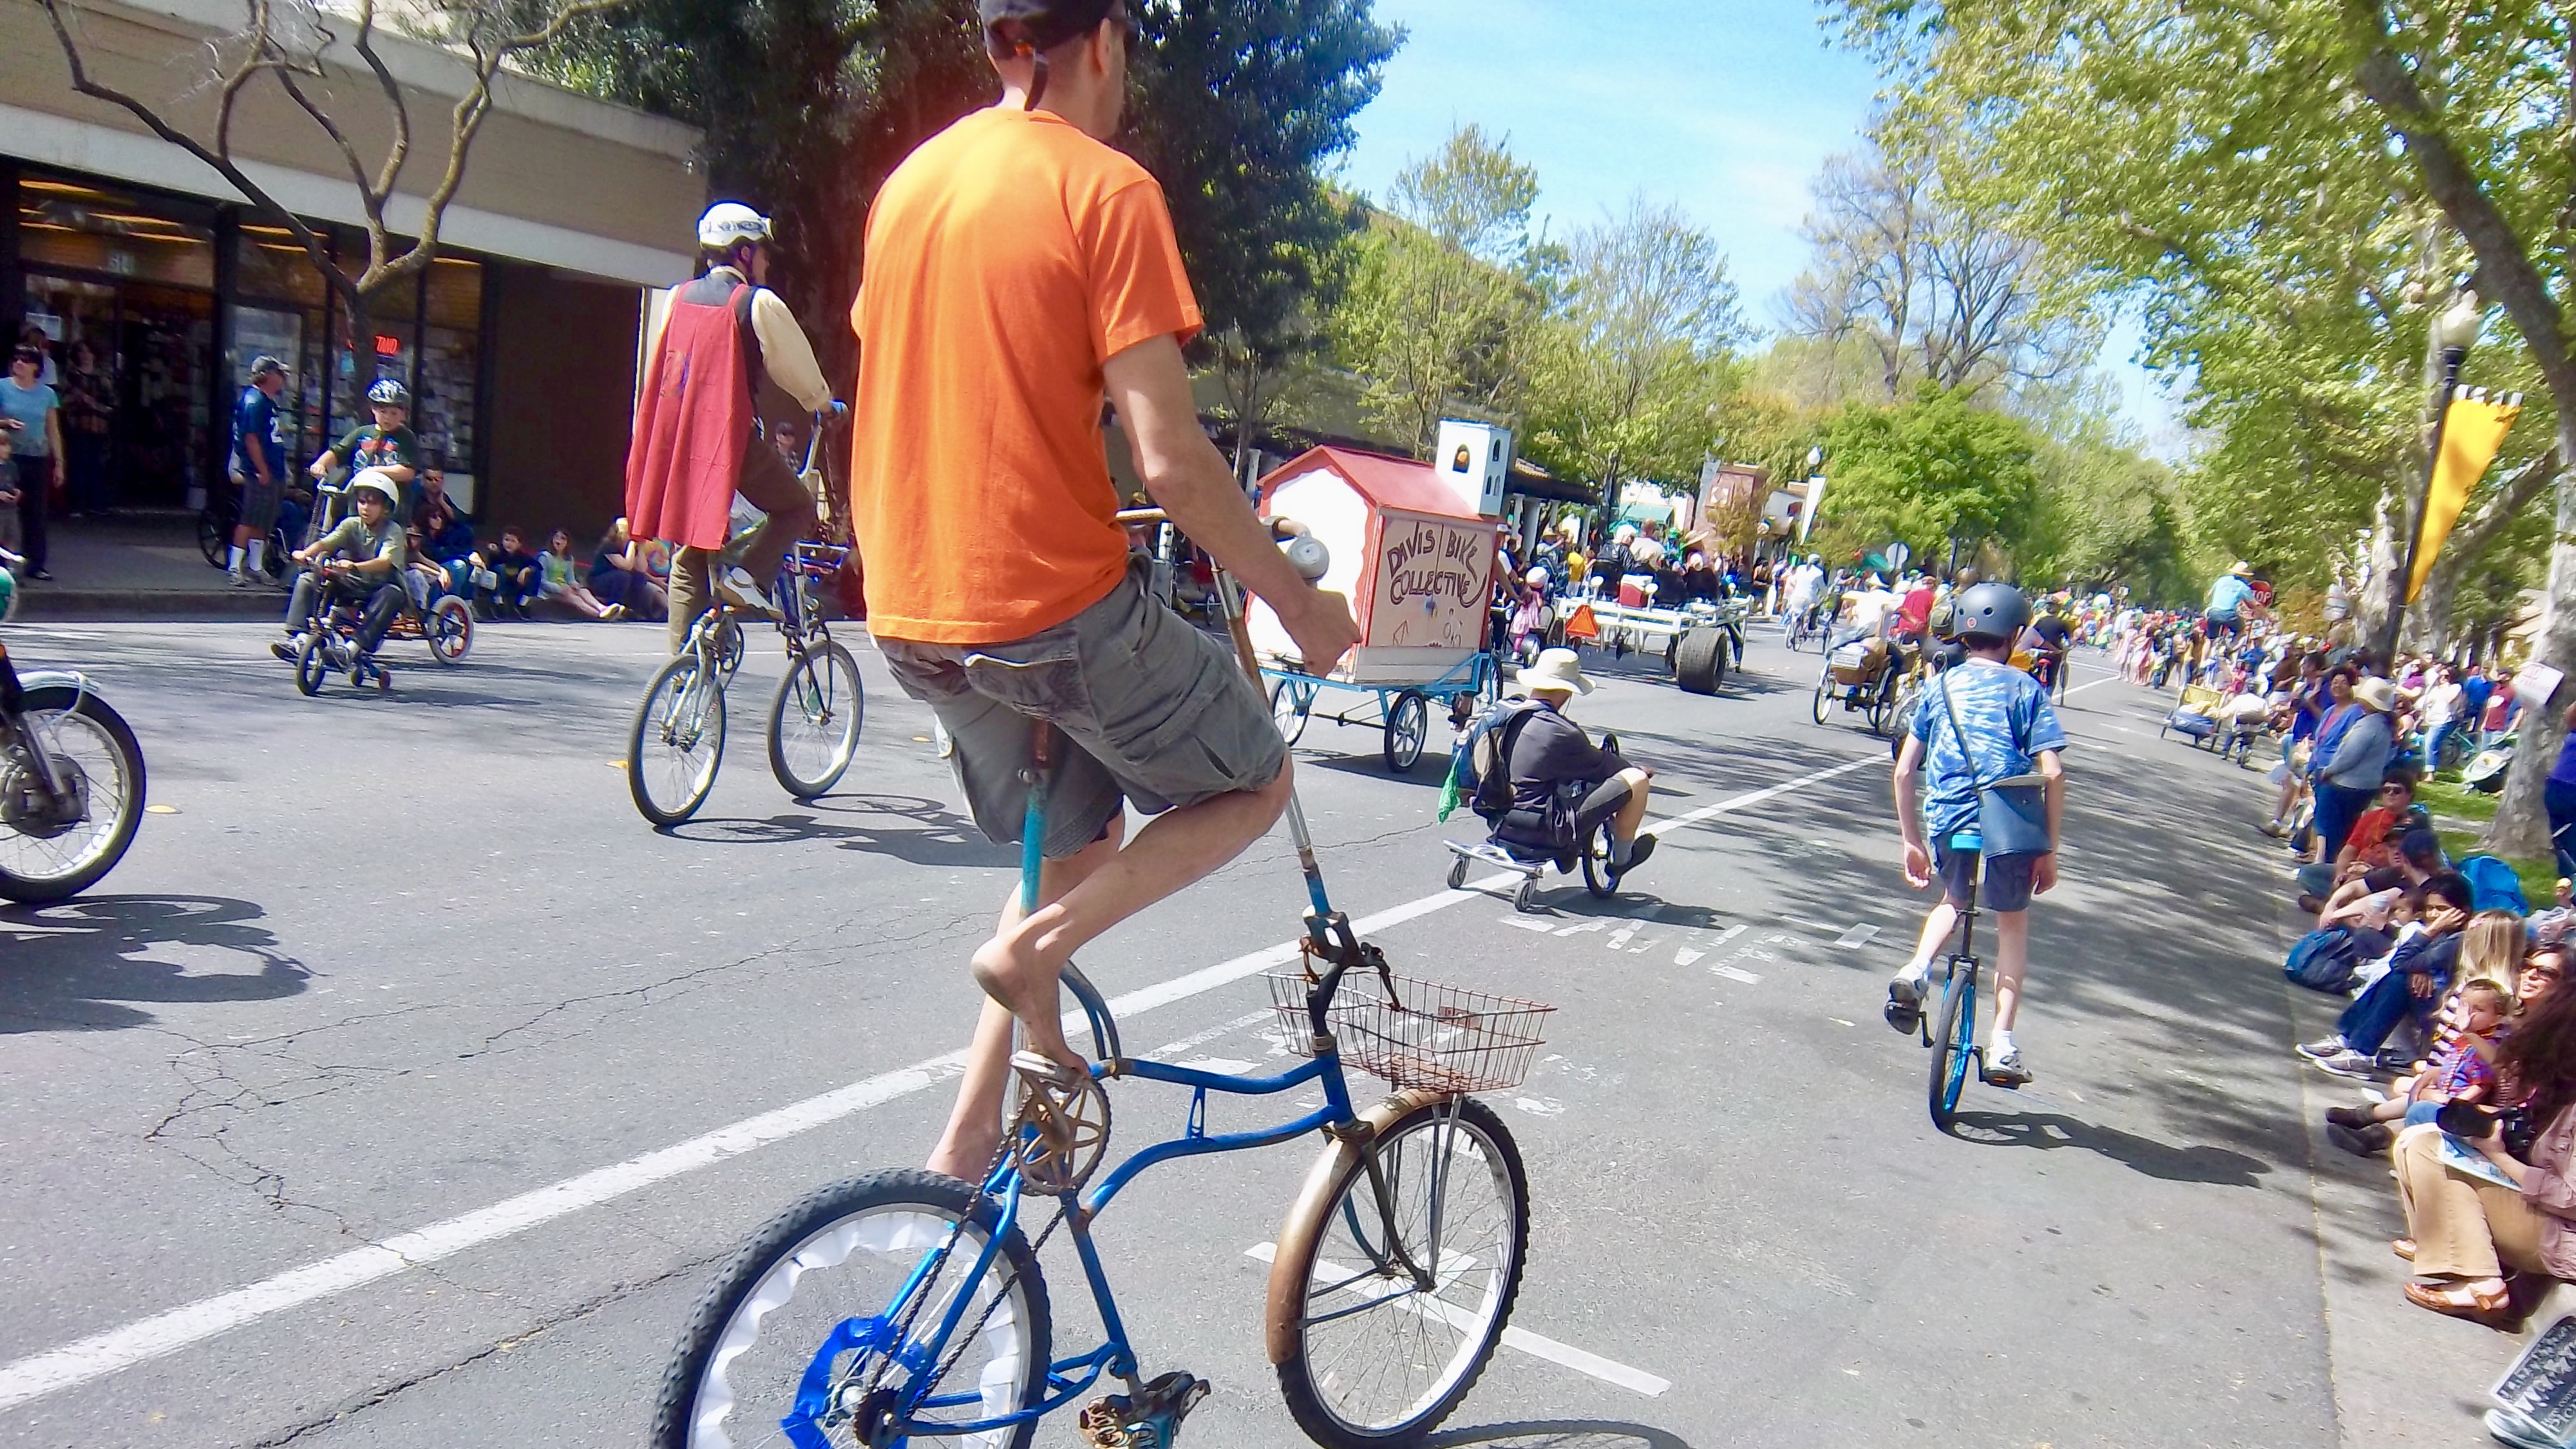 Bike parade in Davis